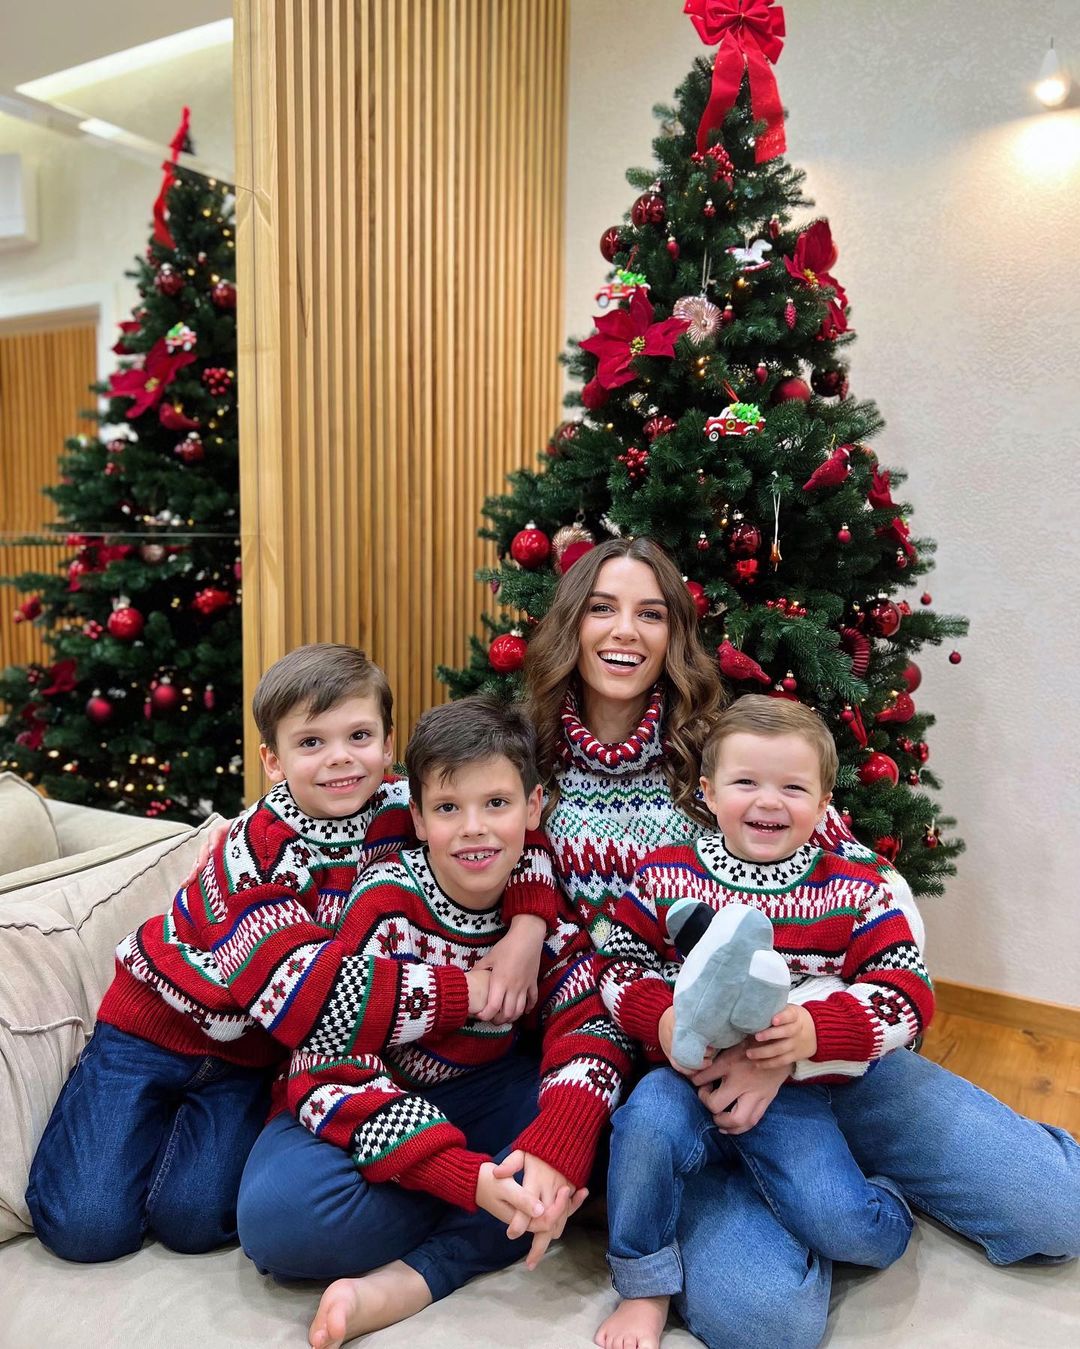 Христина Решетник придбала усім однакові святкові светри – тепло і комфортно. Фото: Instagram.com/kristina_reshetnik/